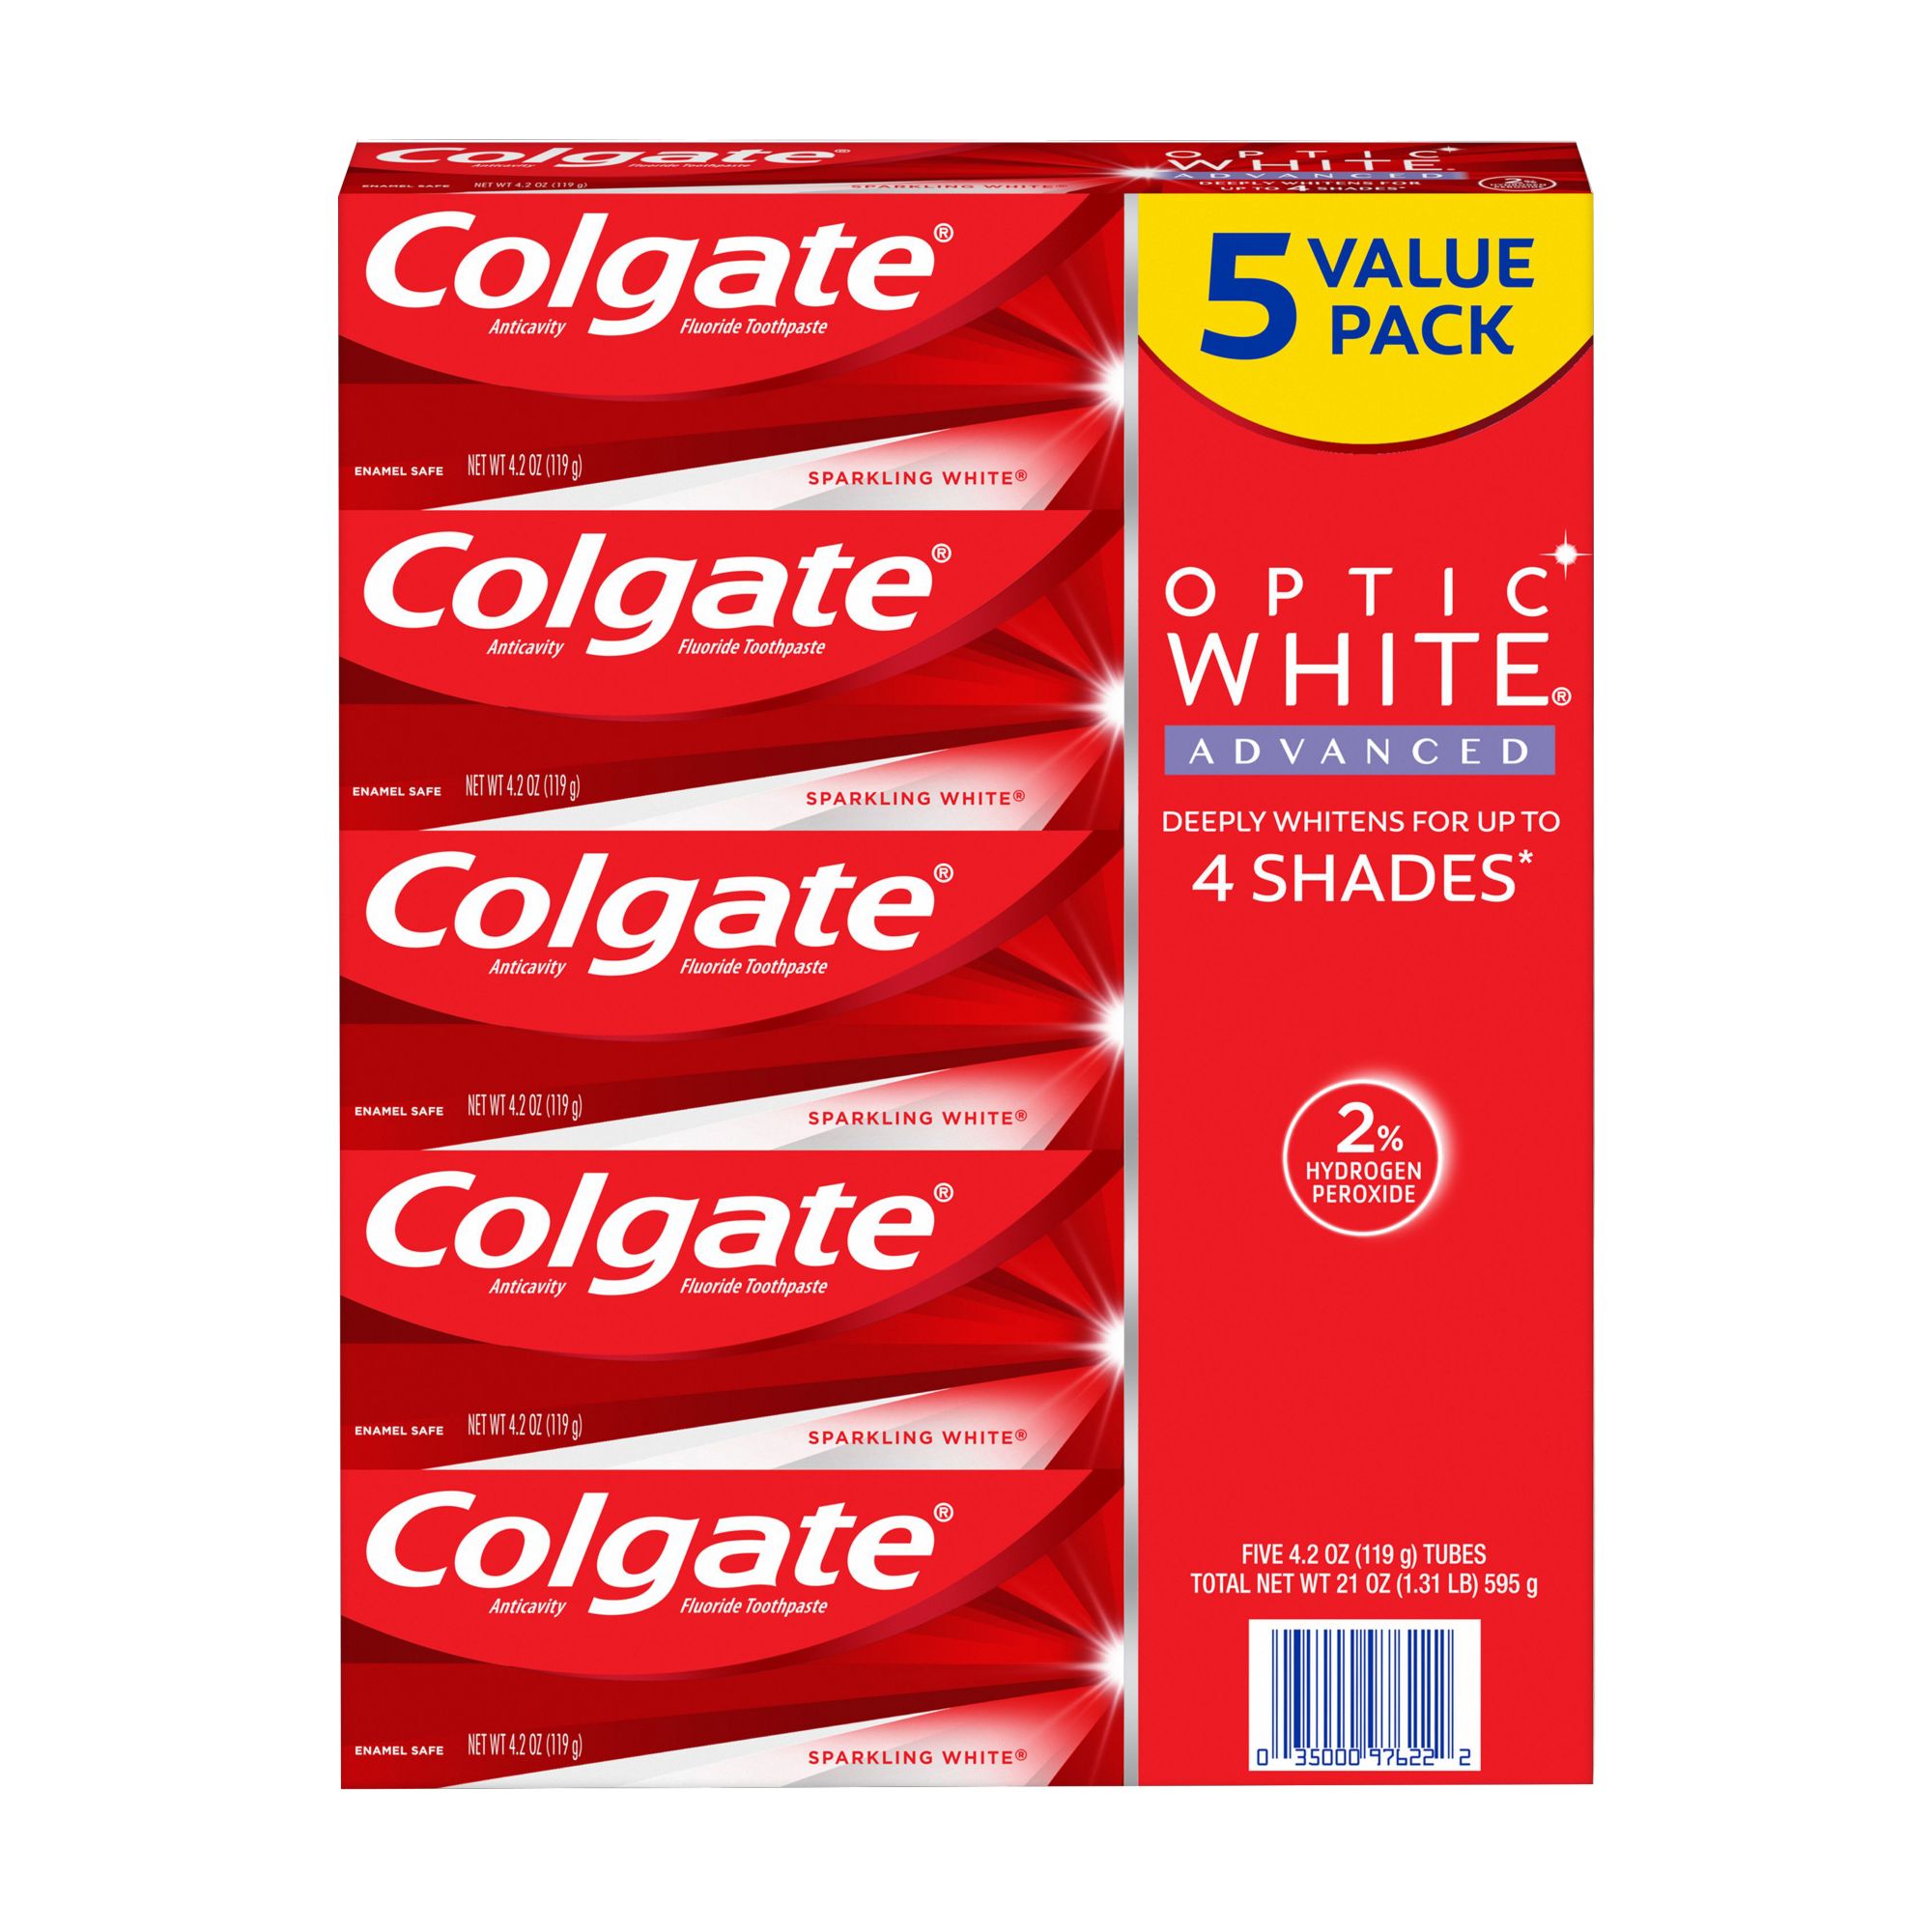 Colgate max white optic white